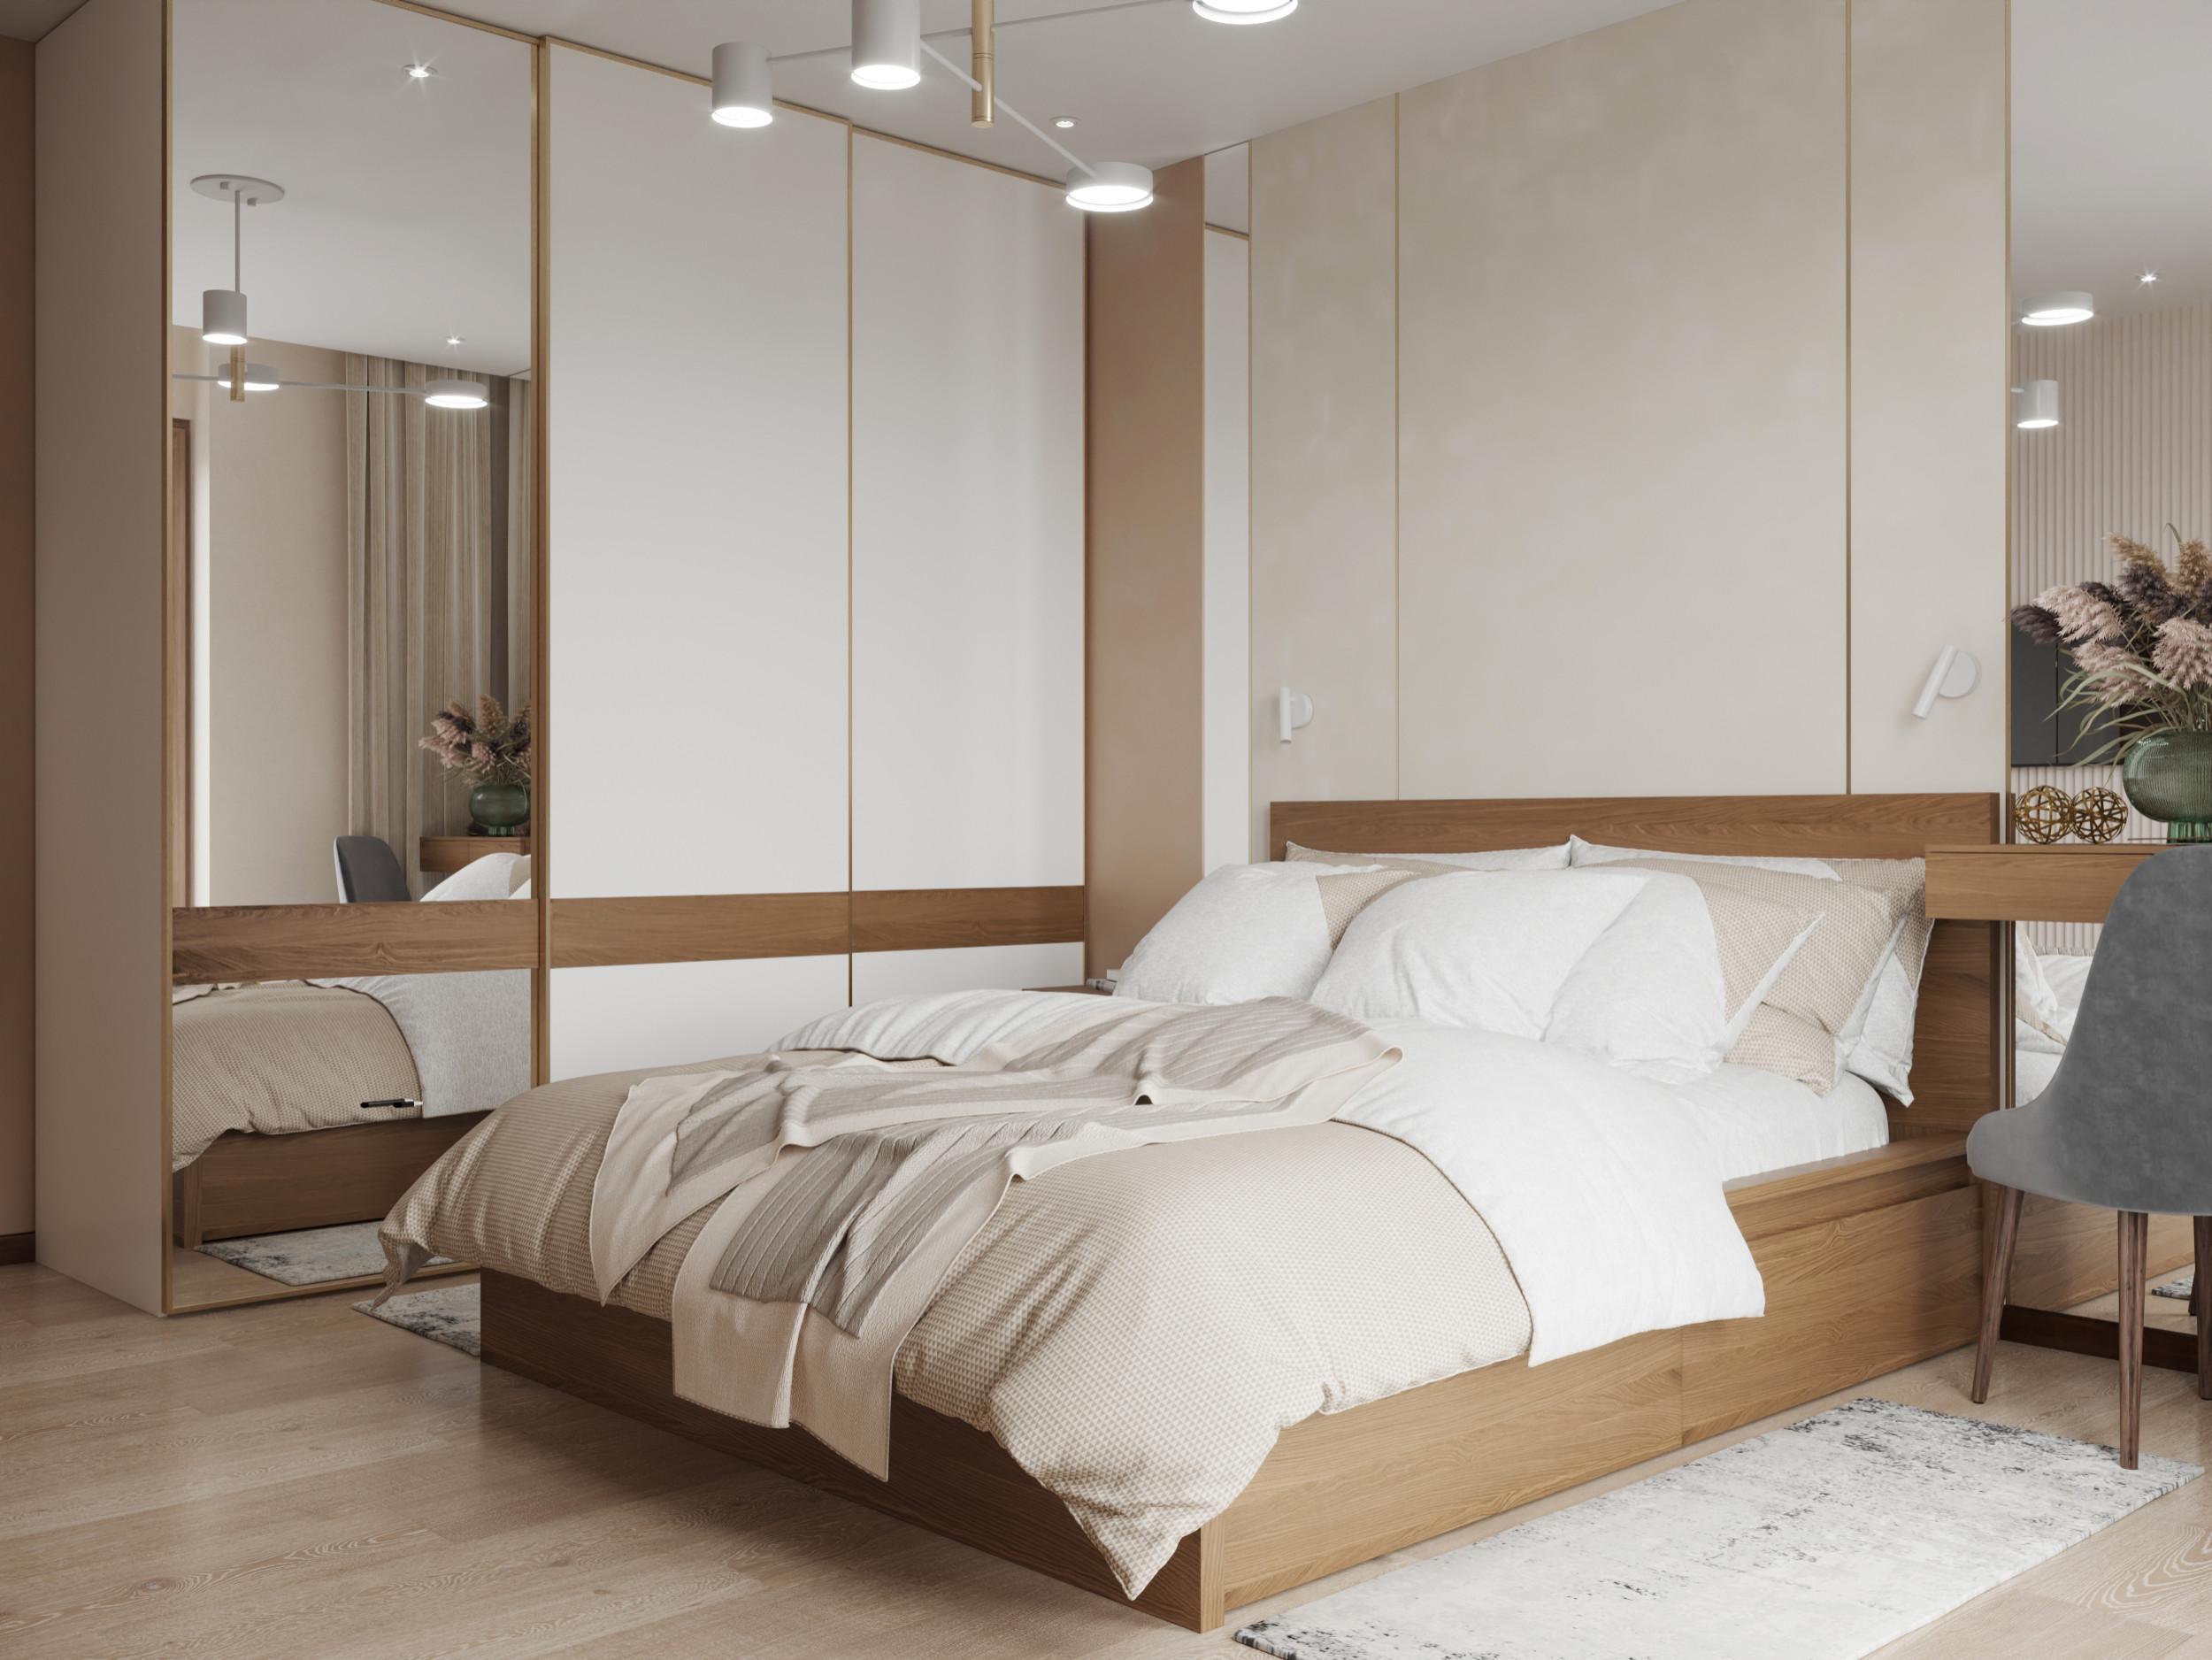 Интерьер спальни cветовыми линиями, бра над кроватью, подсветкой светодиодной и светильниками над кроватью в современном стиле и в стиле лофт